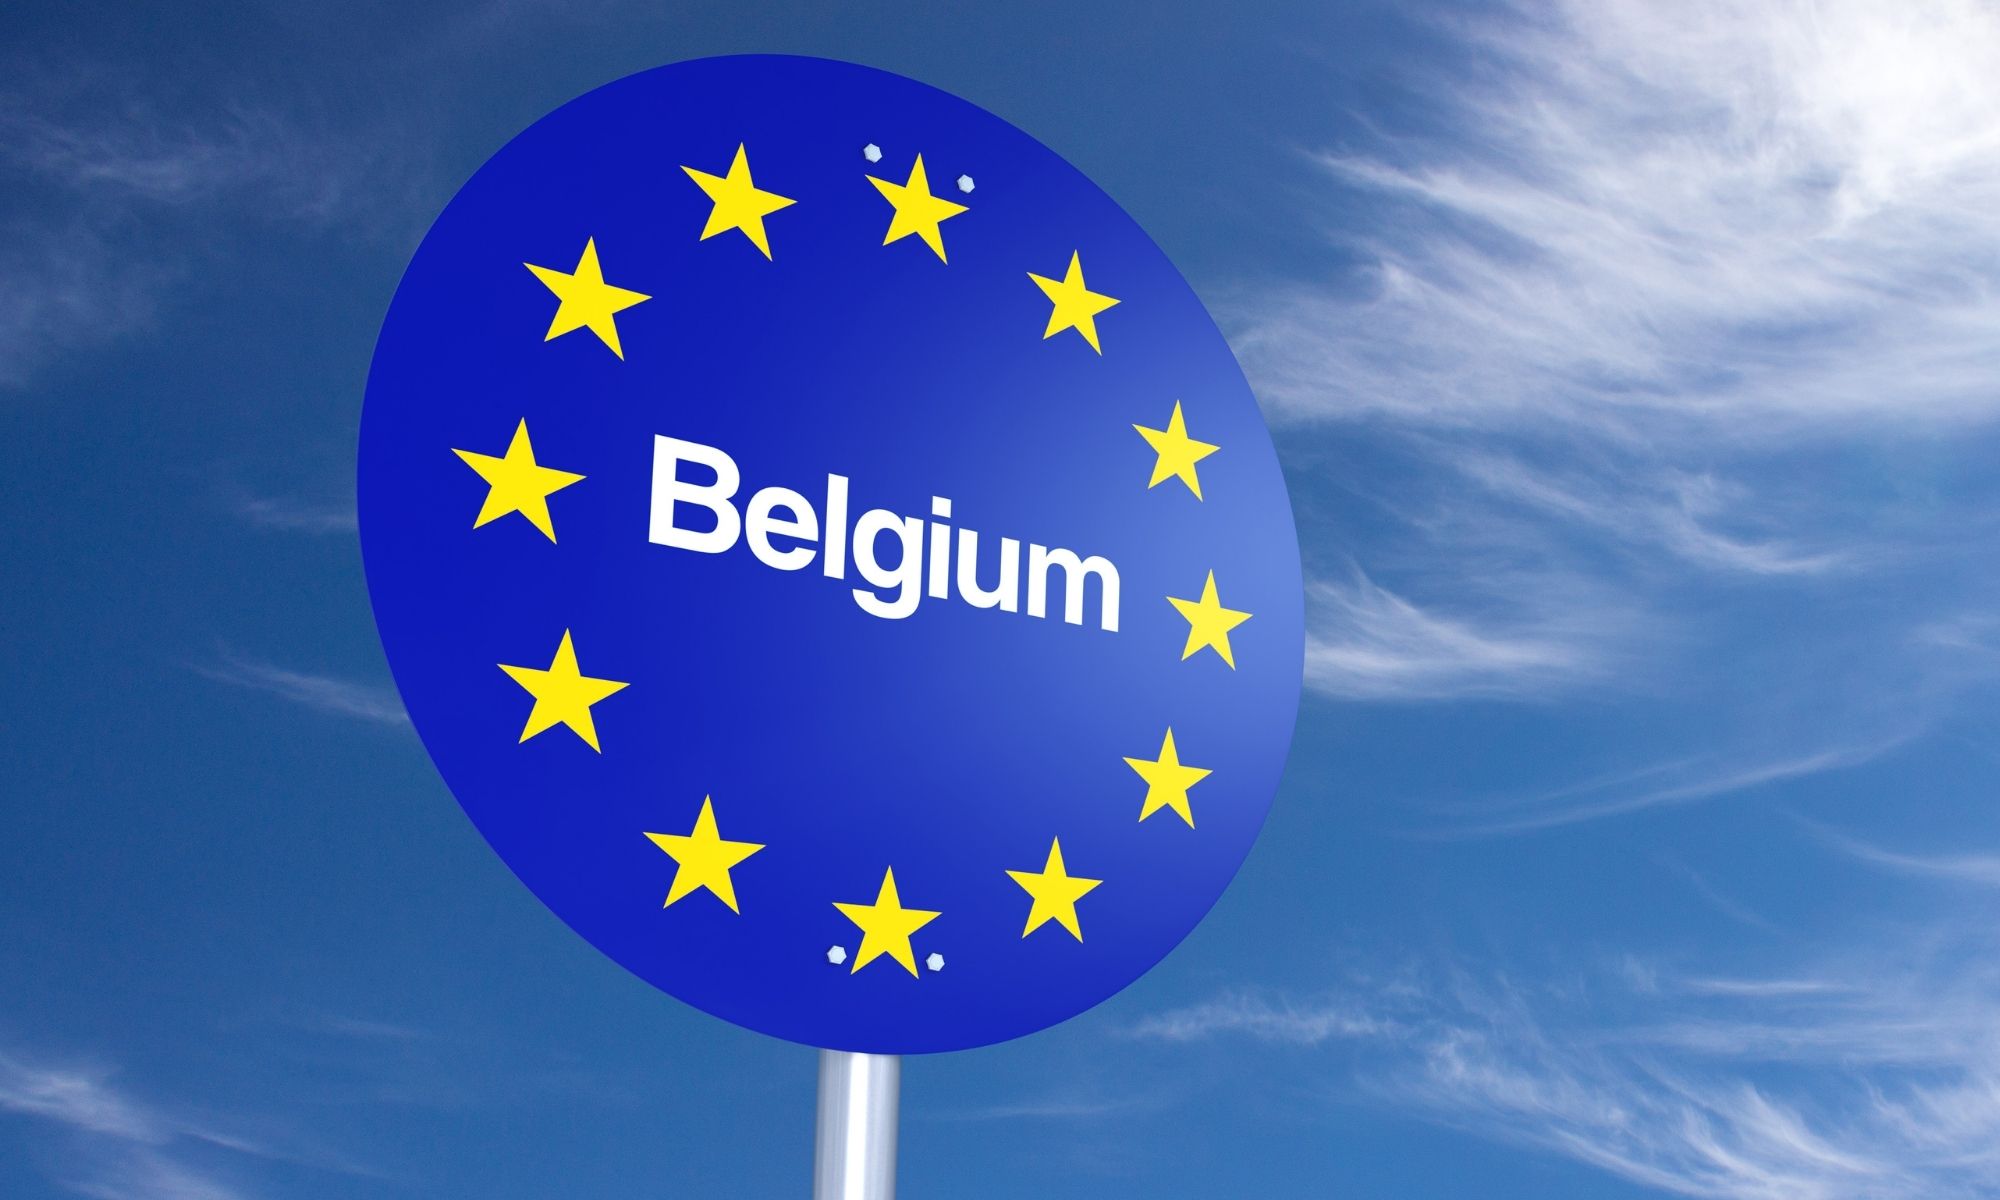 Les frontières belges rouvrent dés aujourd’hui, lundi 19 avril